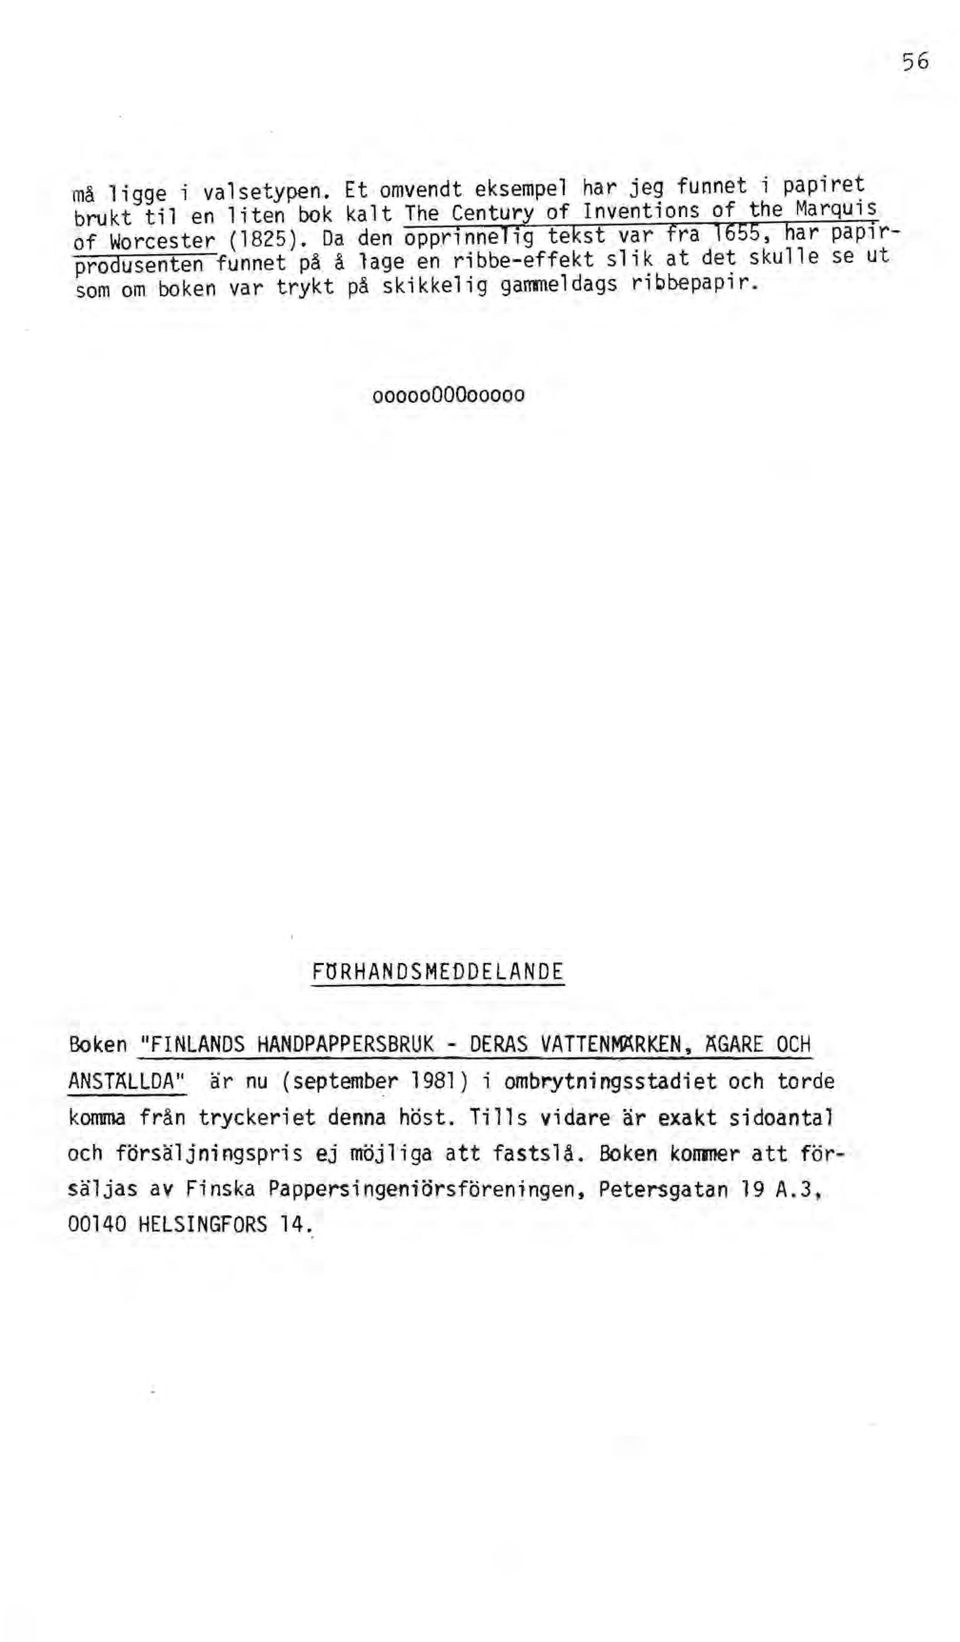 0000000000000 FöRHANDSMEDDELANDE Boken "FINLANDS HANDPAPPERSBRUK - DERAS VATTENMÄRKEN, ÄGARE OCH ANSTÄLLDA" är nu (september 1981) i ombrytningsstadiet och torde komma från